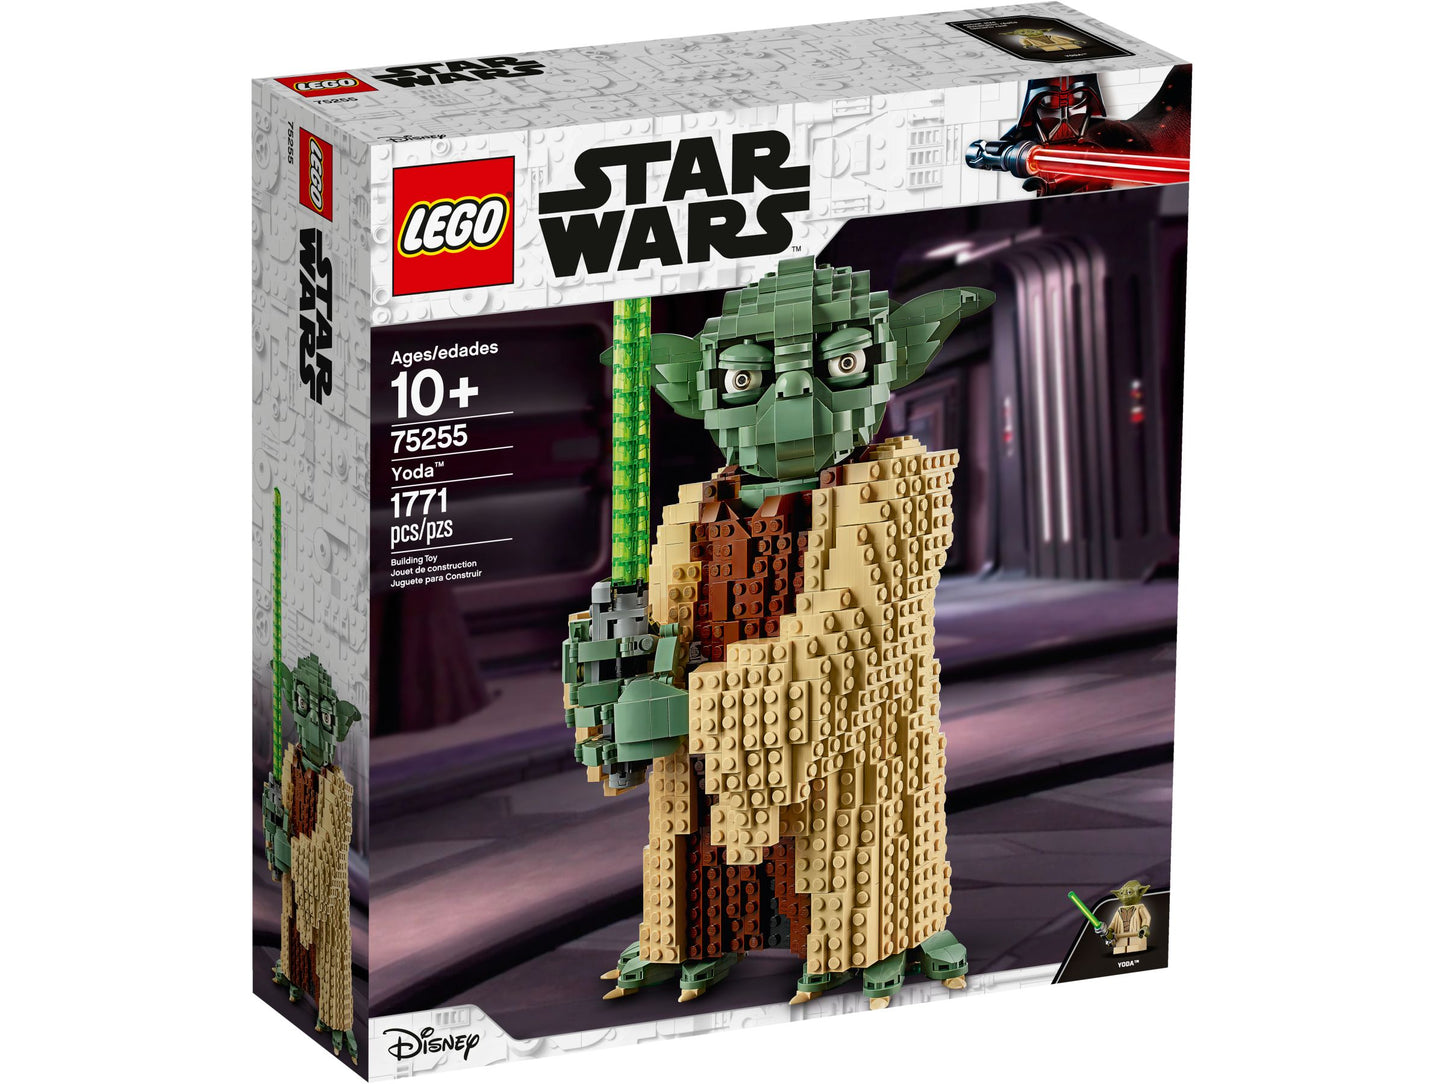 Star Wars 75255 Yoda